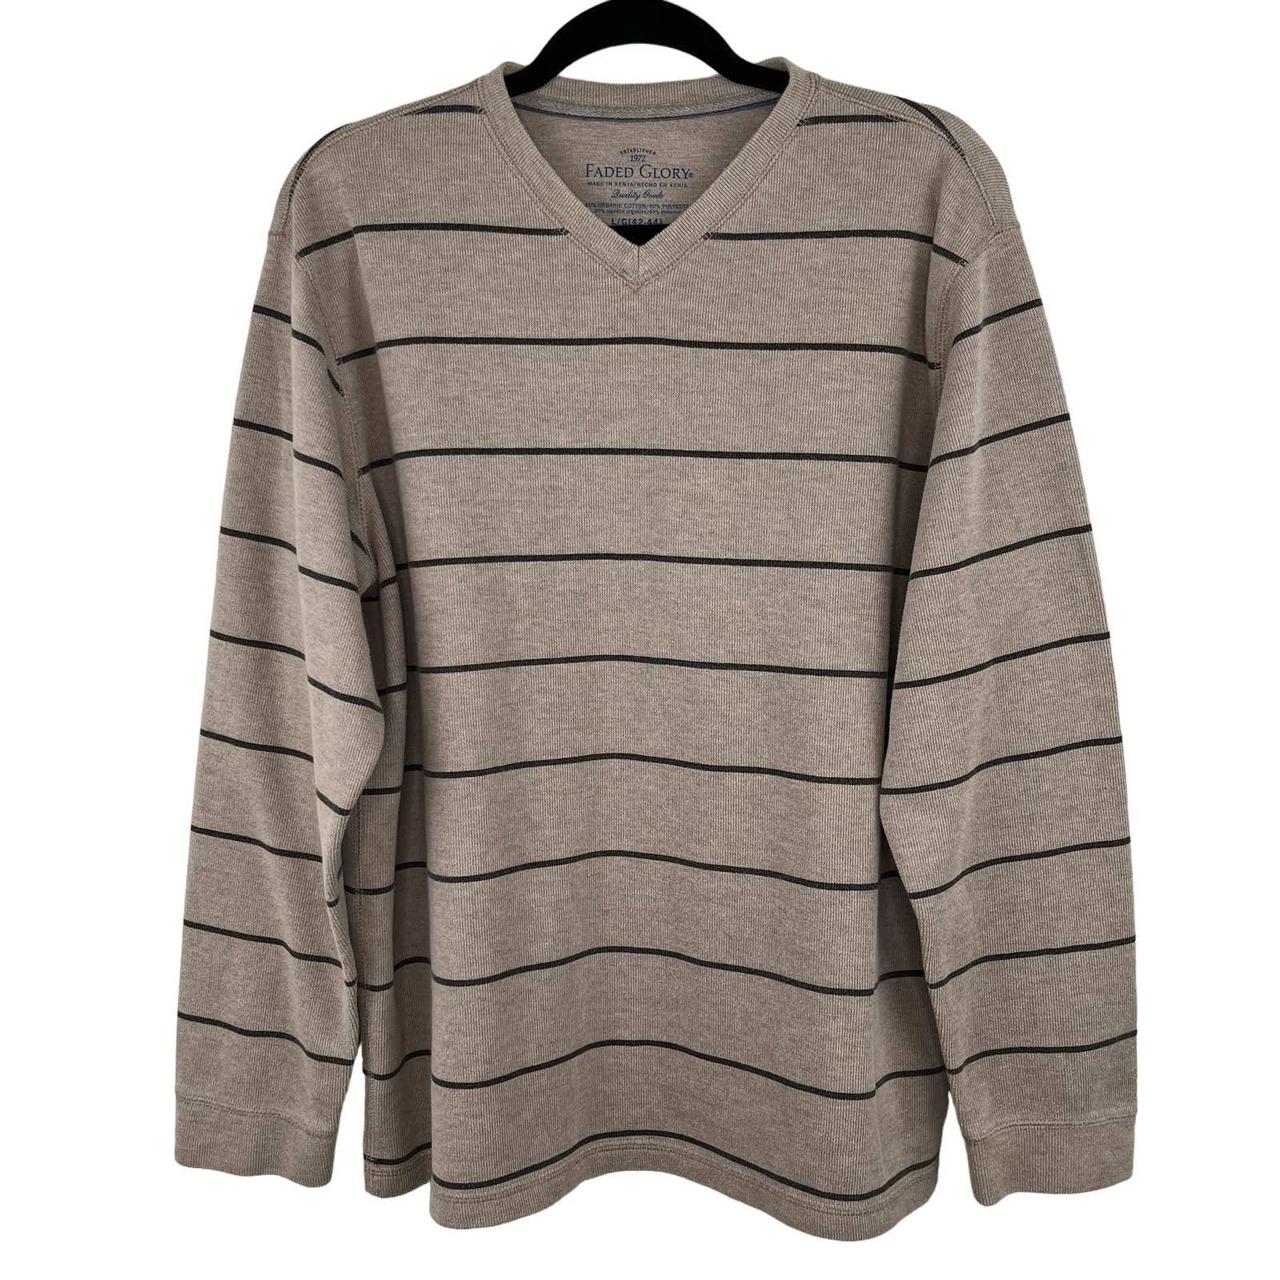 Faded Glory Cotton gray sweater shirt